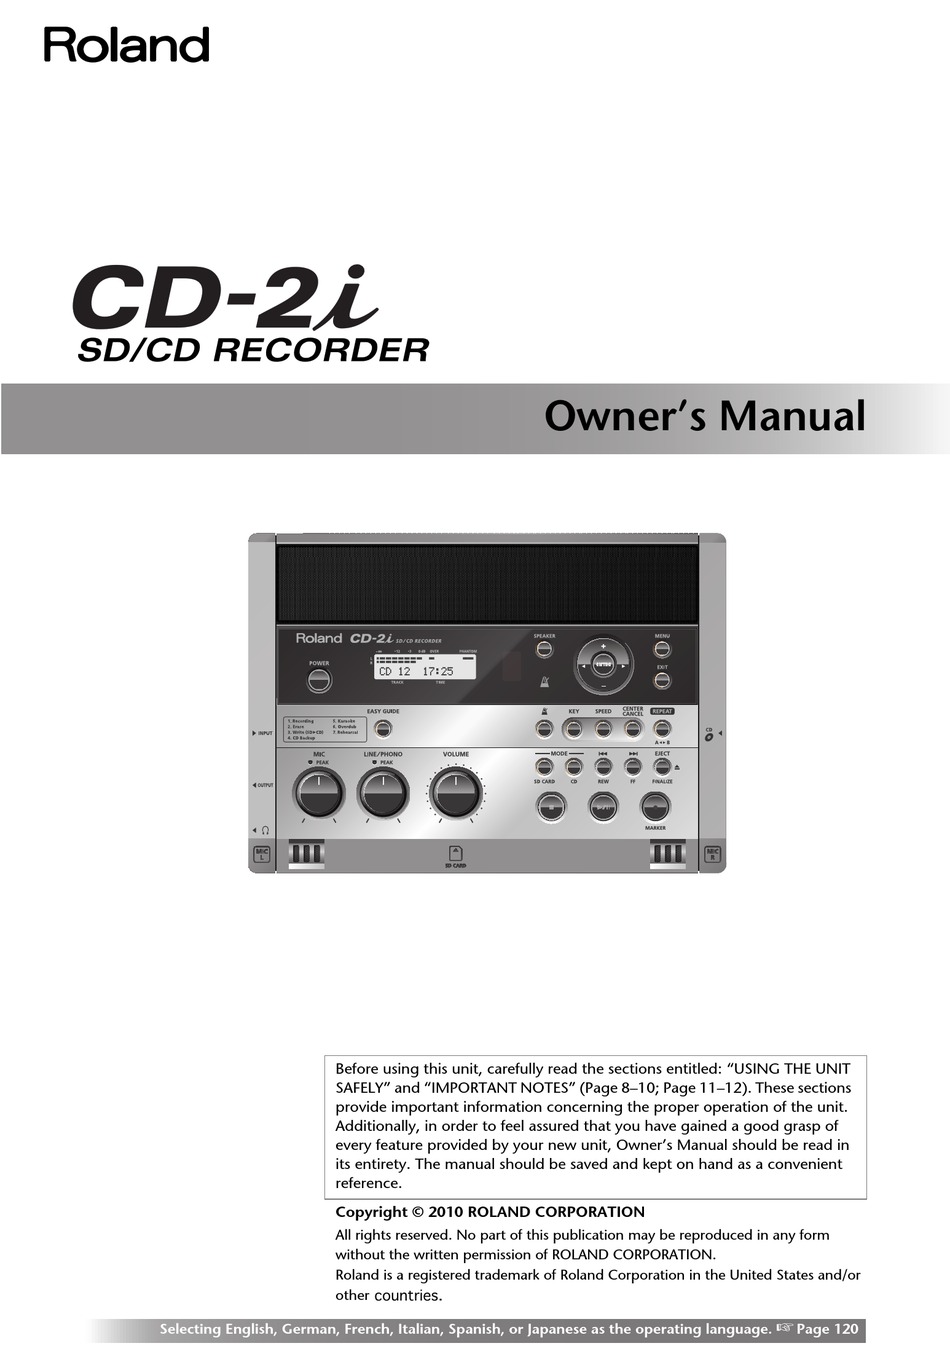 ROLAND CD-2I OWNER'S MANUAL Pdf Download | ManualsLib